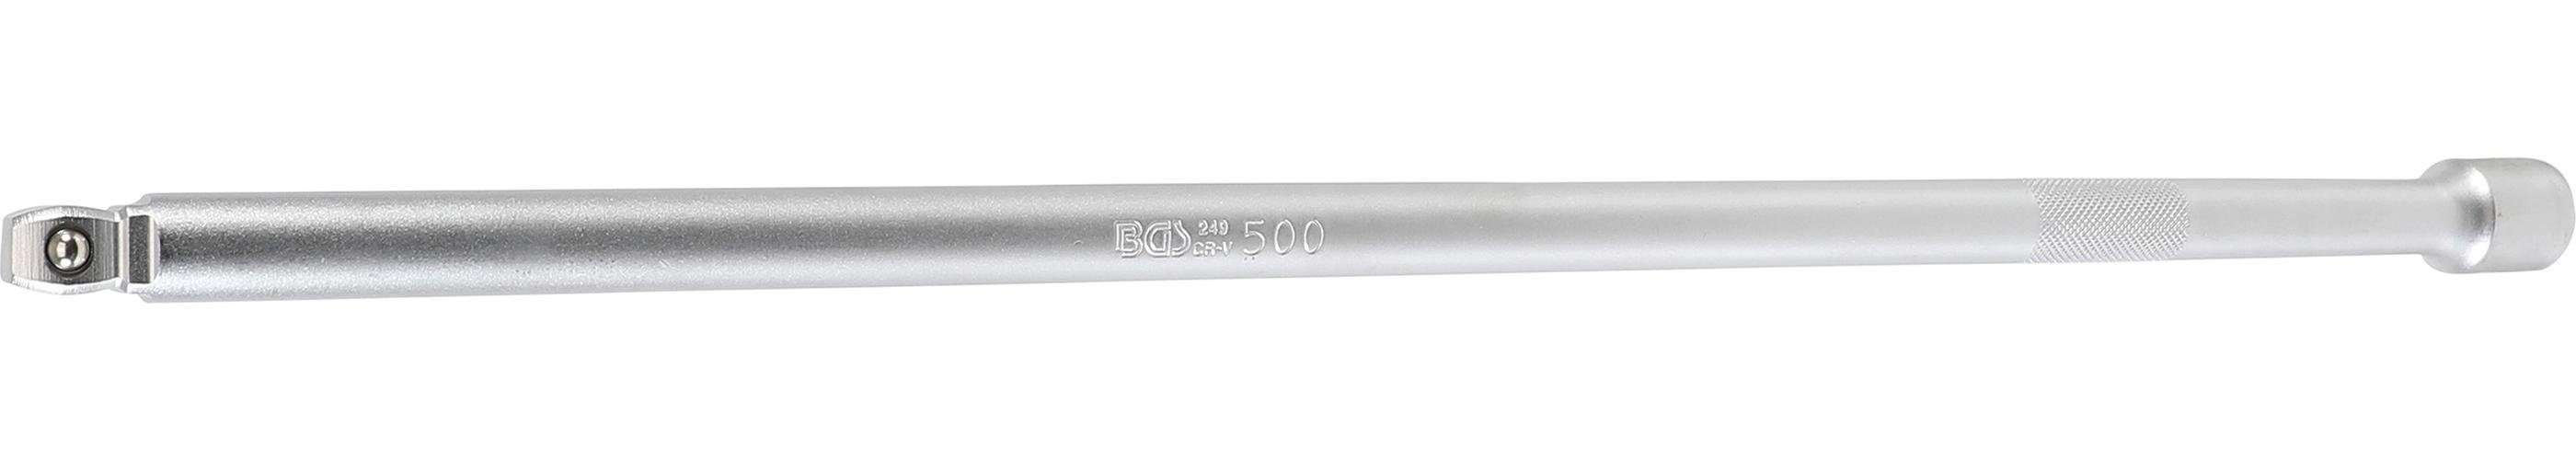 BGS technic Ratschenringschlüssel Kipp-Verlängerung, 12,5 mm (1/2), 500 mm